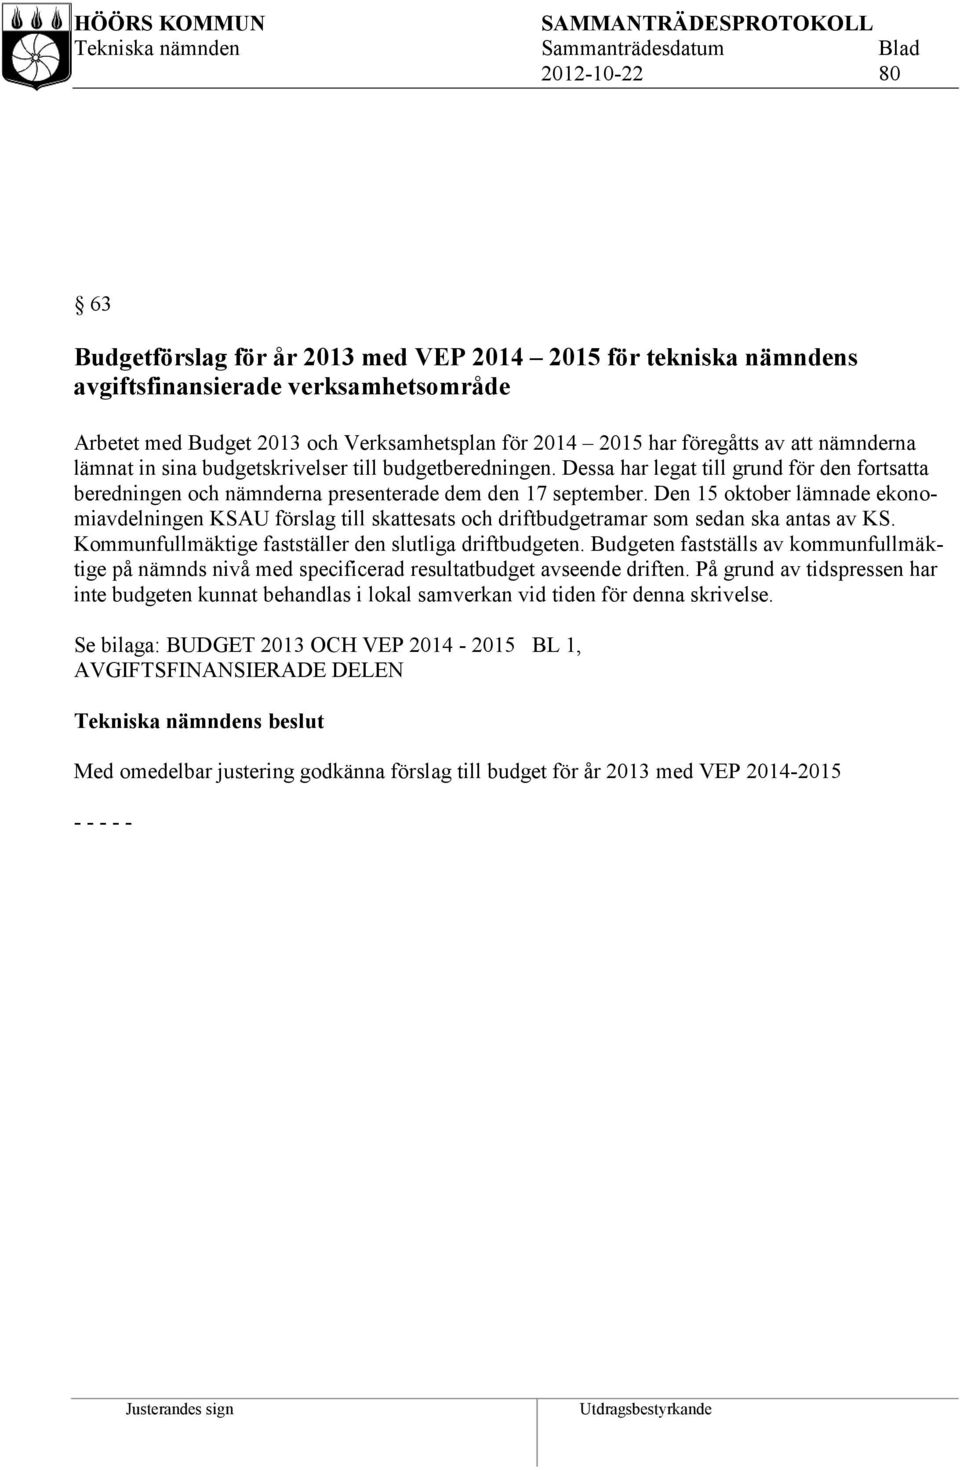 Den 15 oktober lämnade ekonomiavdelningen KSAU förslag till skattesats och driftbudgetramar som sedan ska antas av KS. Kommunfullmäktige fastställer den slutliga driftbudgeten.